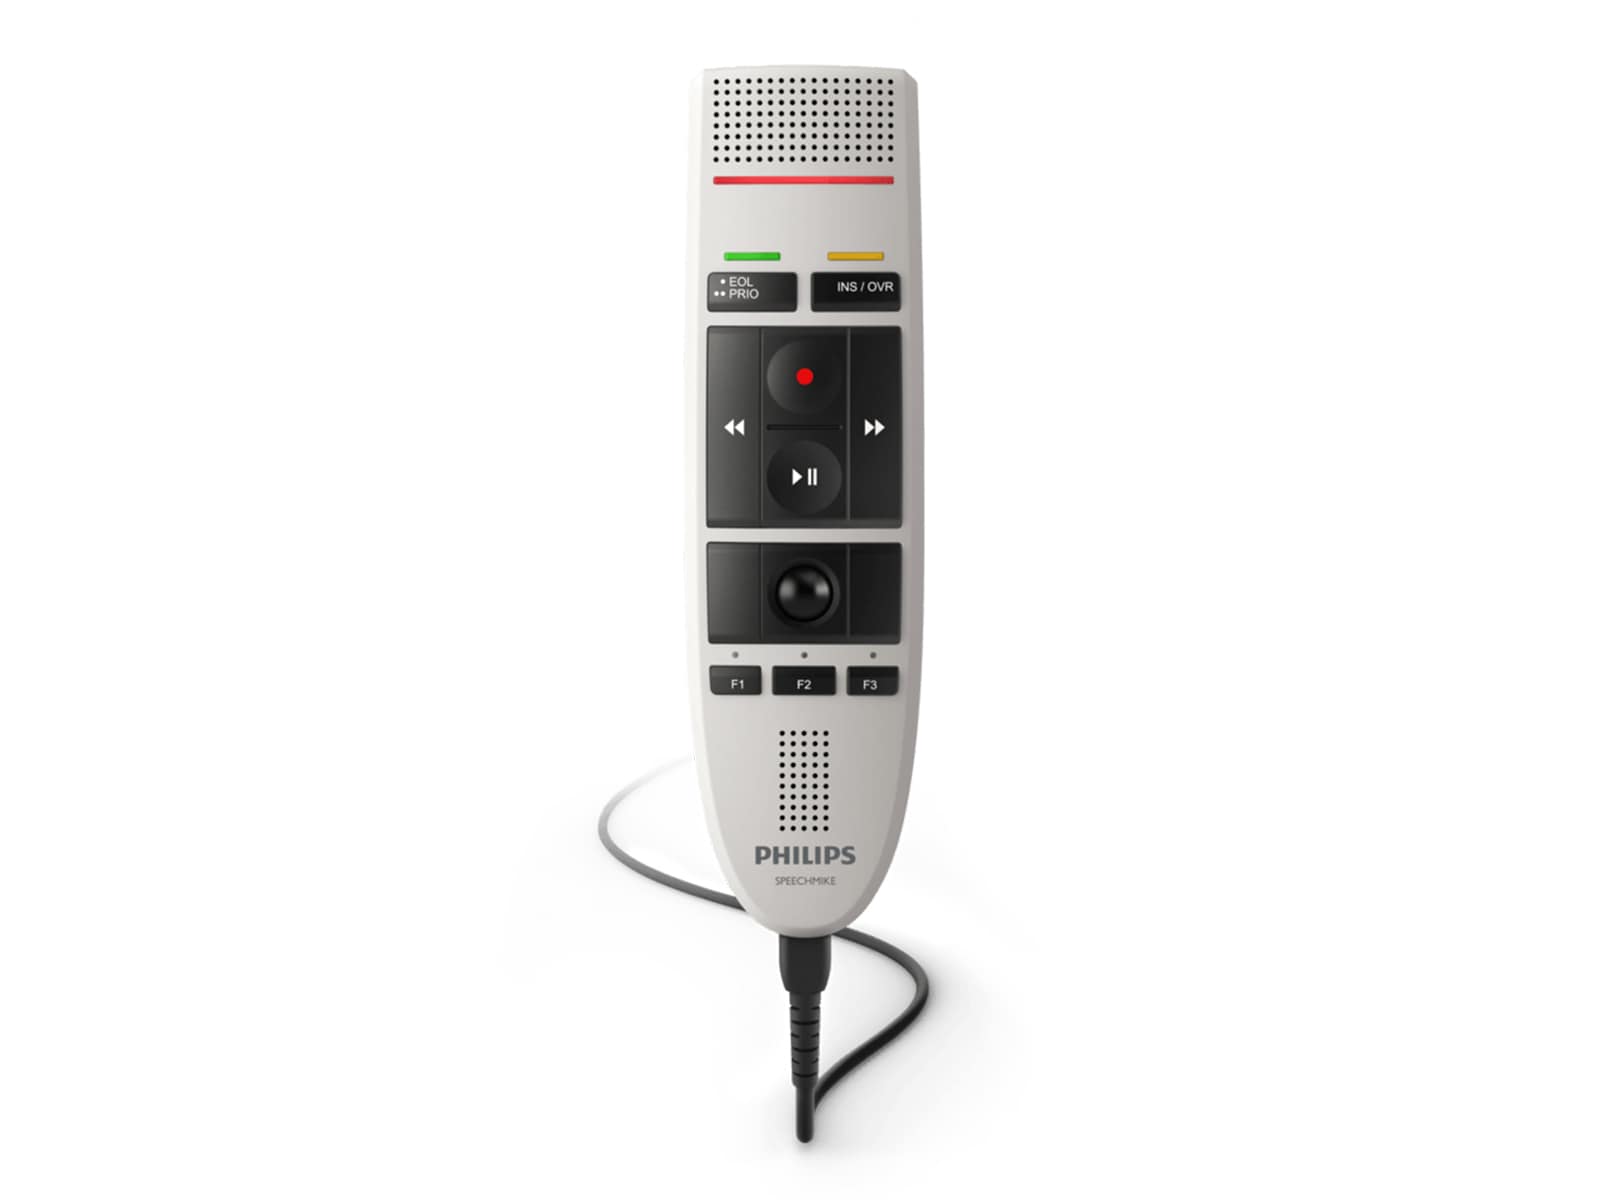 Philips SpeechMike III Pro Micrófono de dictado con botón pulsador (LFH3200) Monitors.com